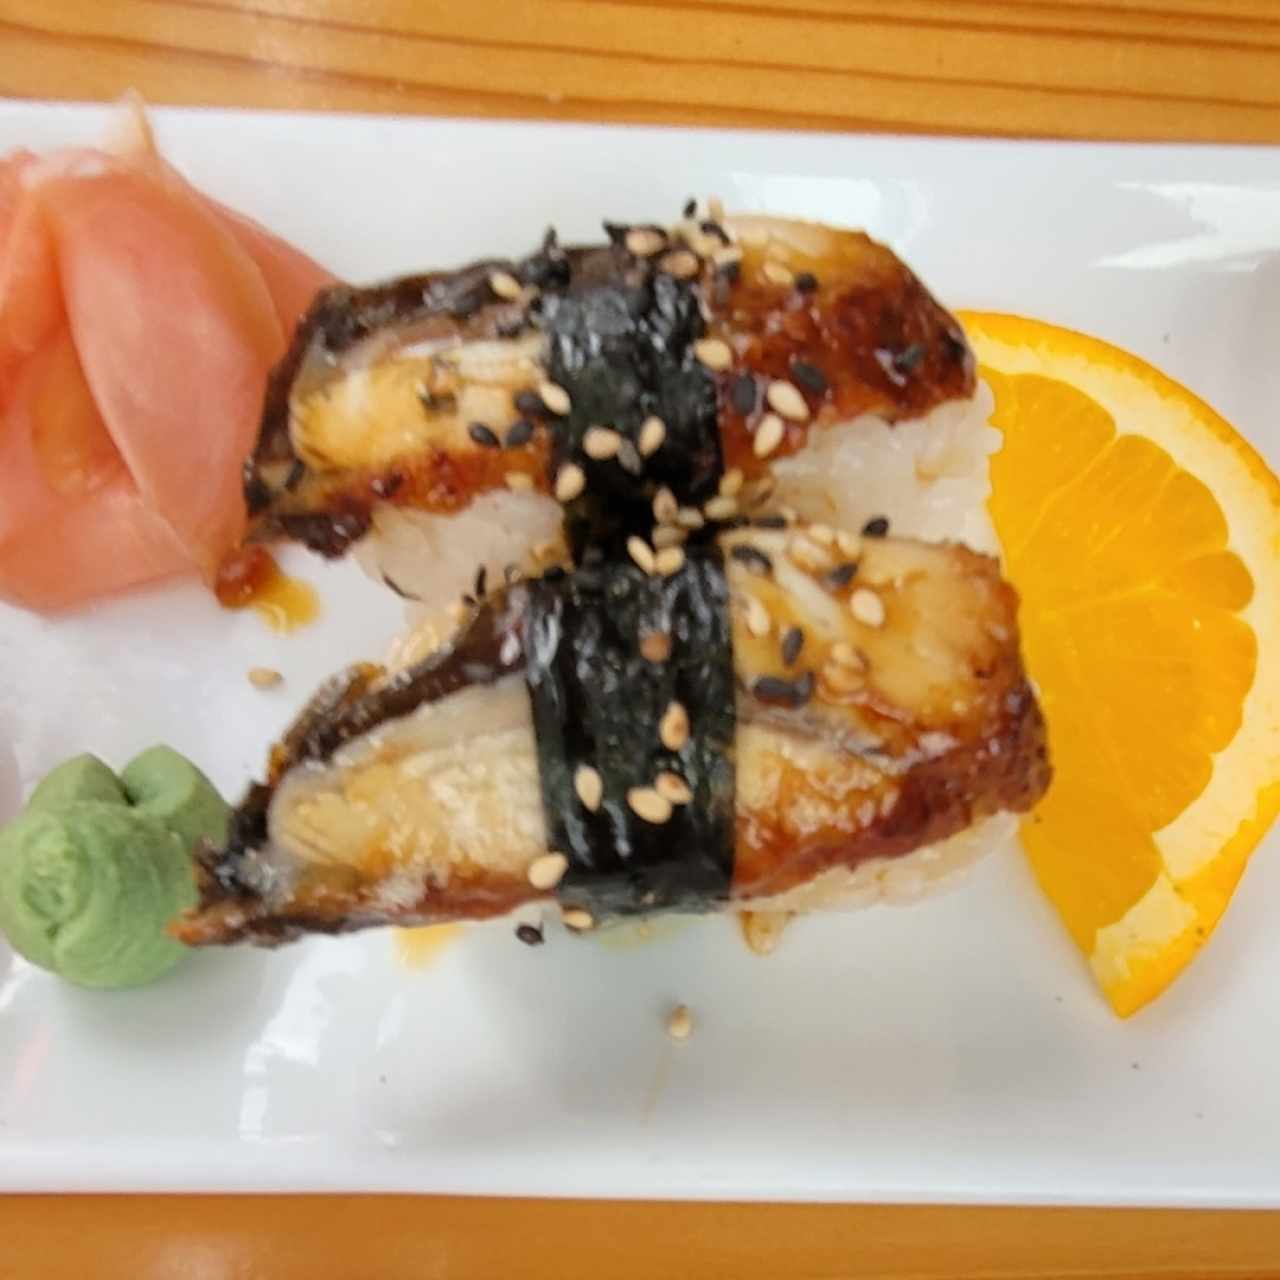 Nigiri sushi - Unagi